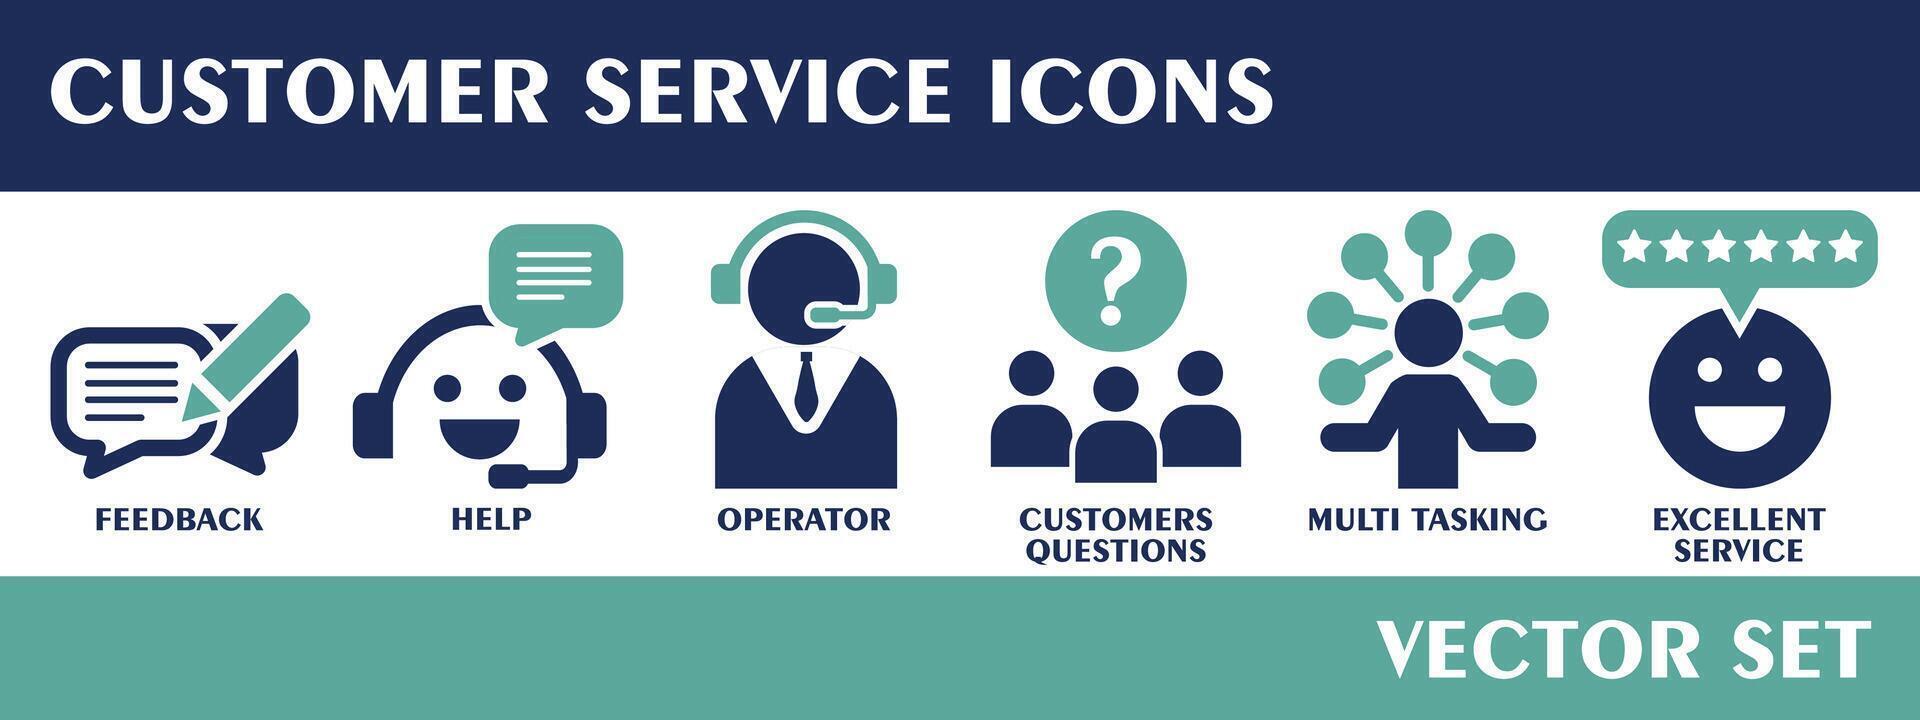 cliente serviço ícones. contendo opinião, ajuda, operador, clientes questões, multi tarefas, excelente serviço, sólido ícone coleção. vetor definir.